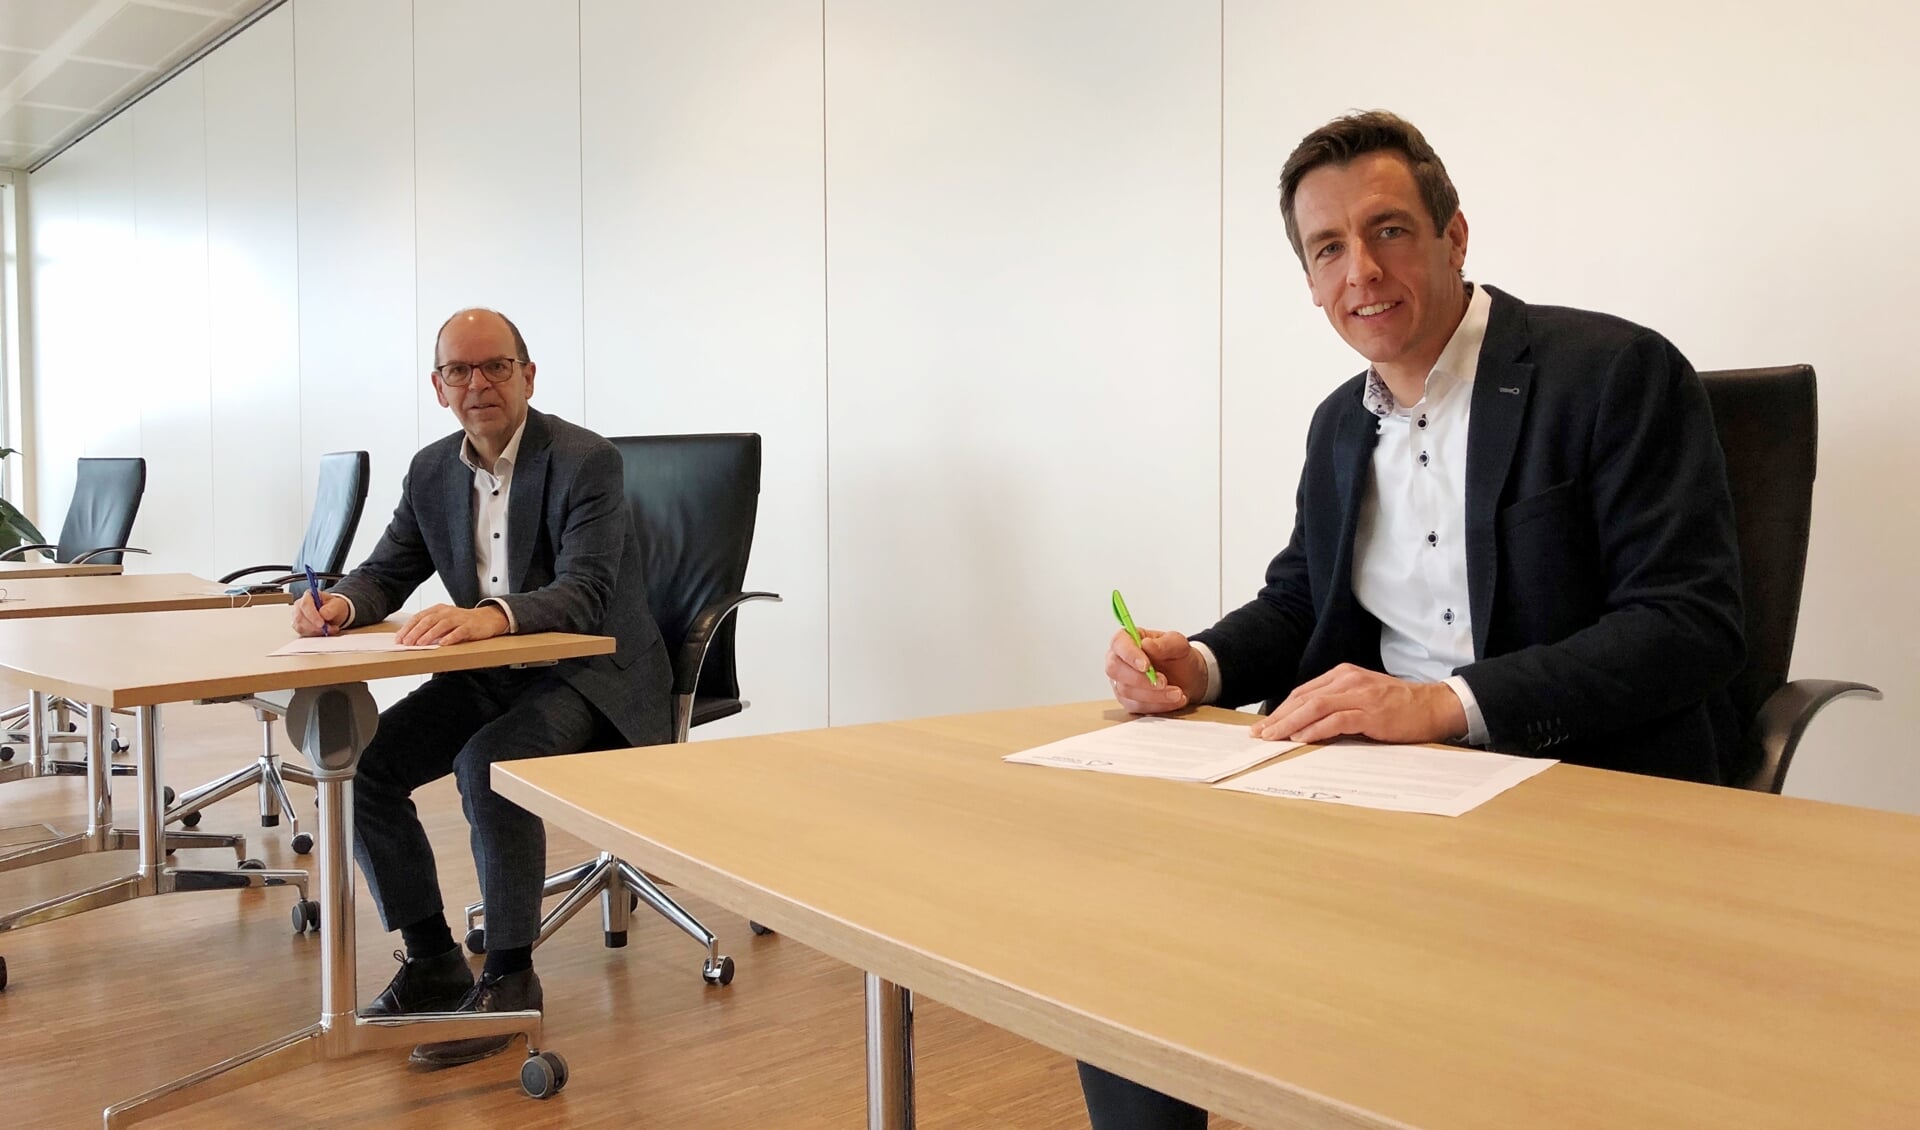 Wethouder Hans Tanis en projectontwikkelaar Van Daalen ondertekenen de overeenkomst voor de bouw van de Poort van Woudrichem.